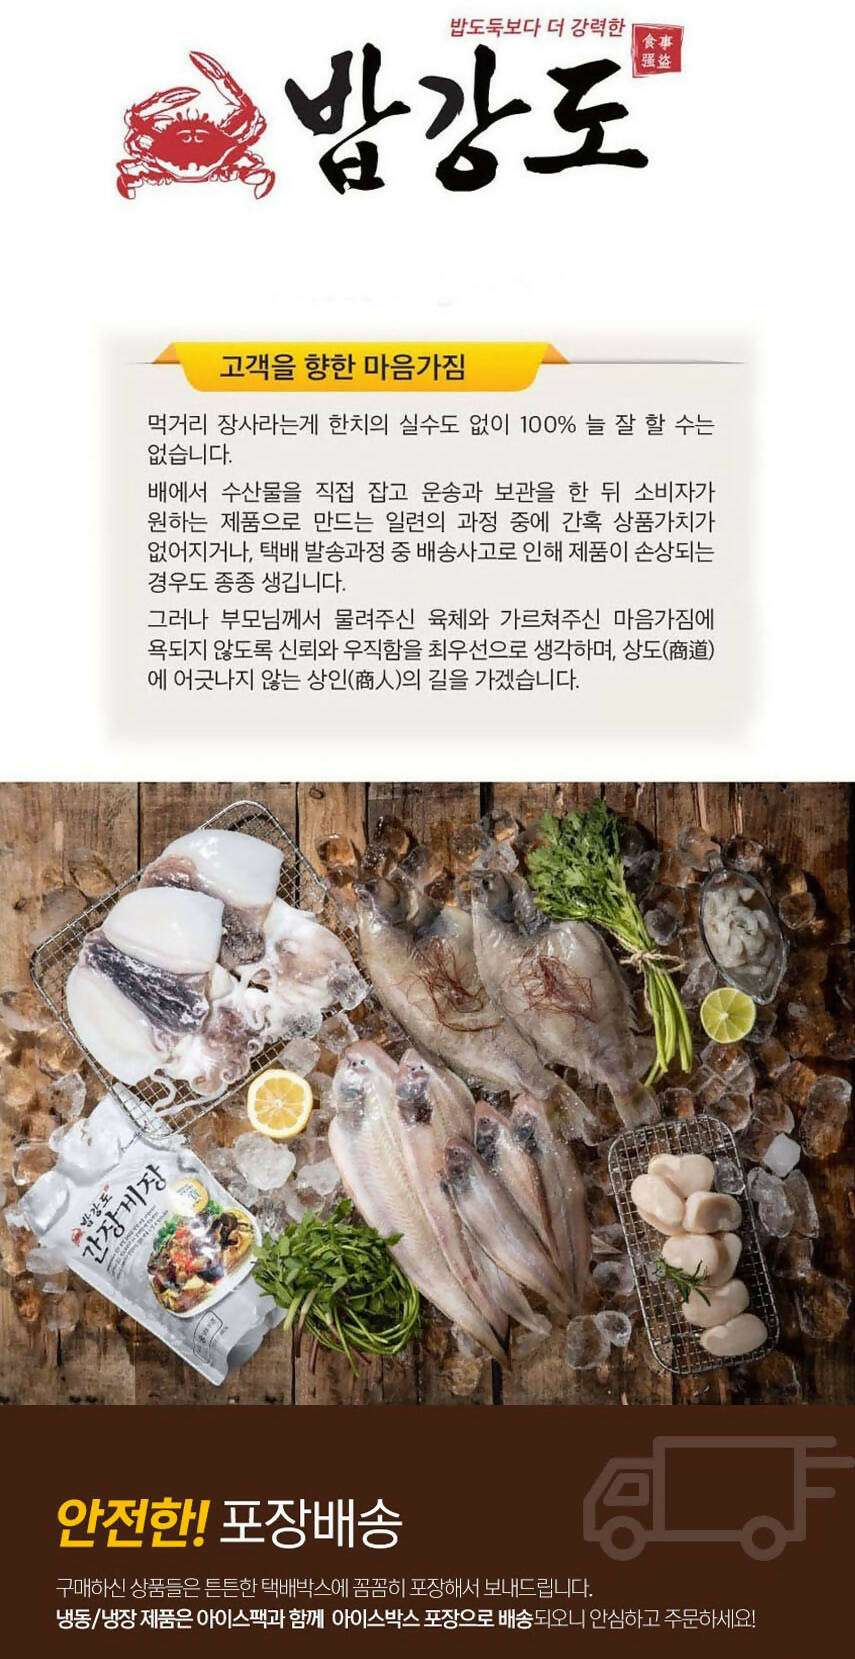 [고국배송] 최상품 군산 밥강도 3종 선물세트 (간장게장 1.4kg + 양념게장 500g + 새우장700g)